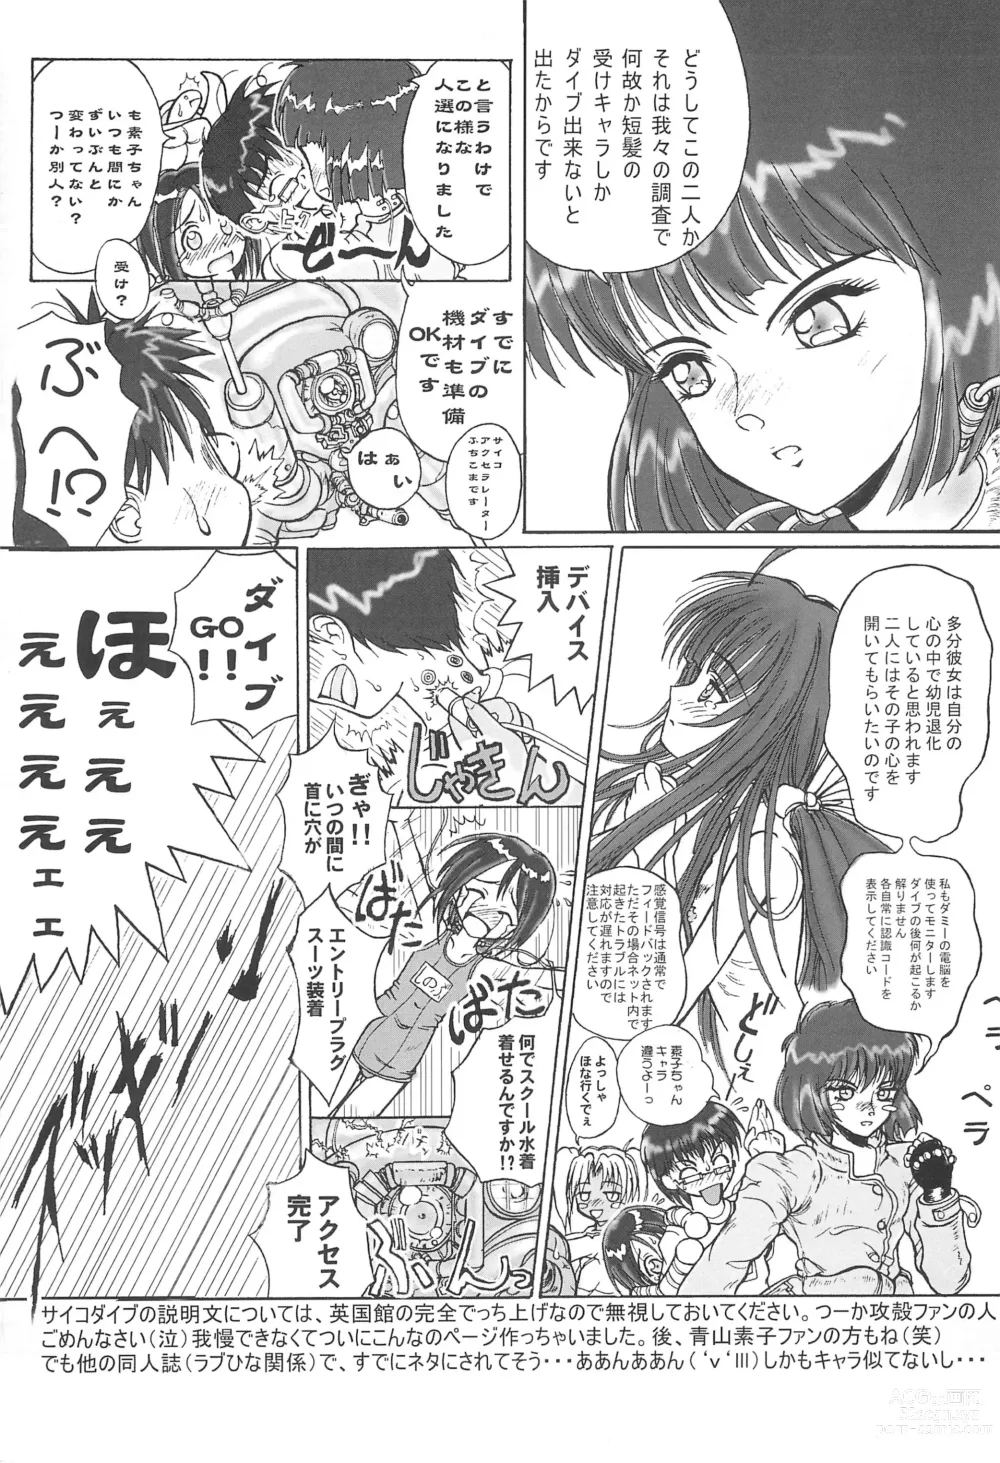 Page 19 of doujinshi Petachin 03